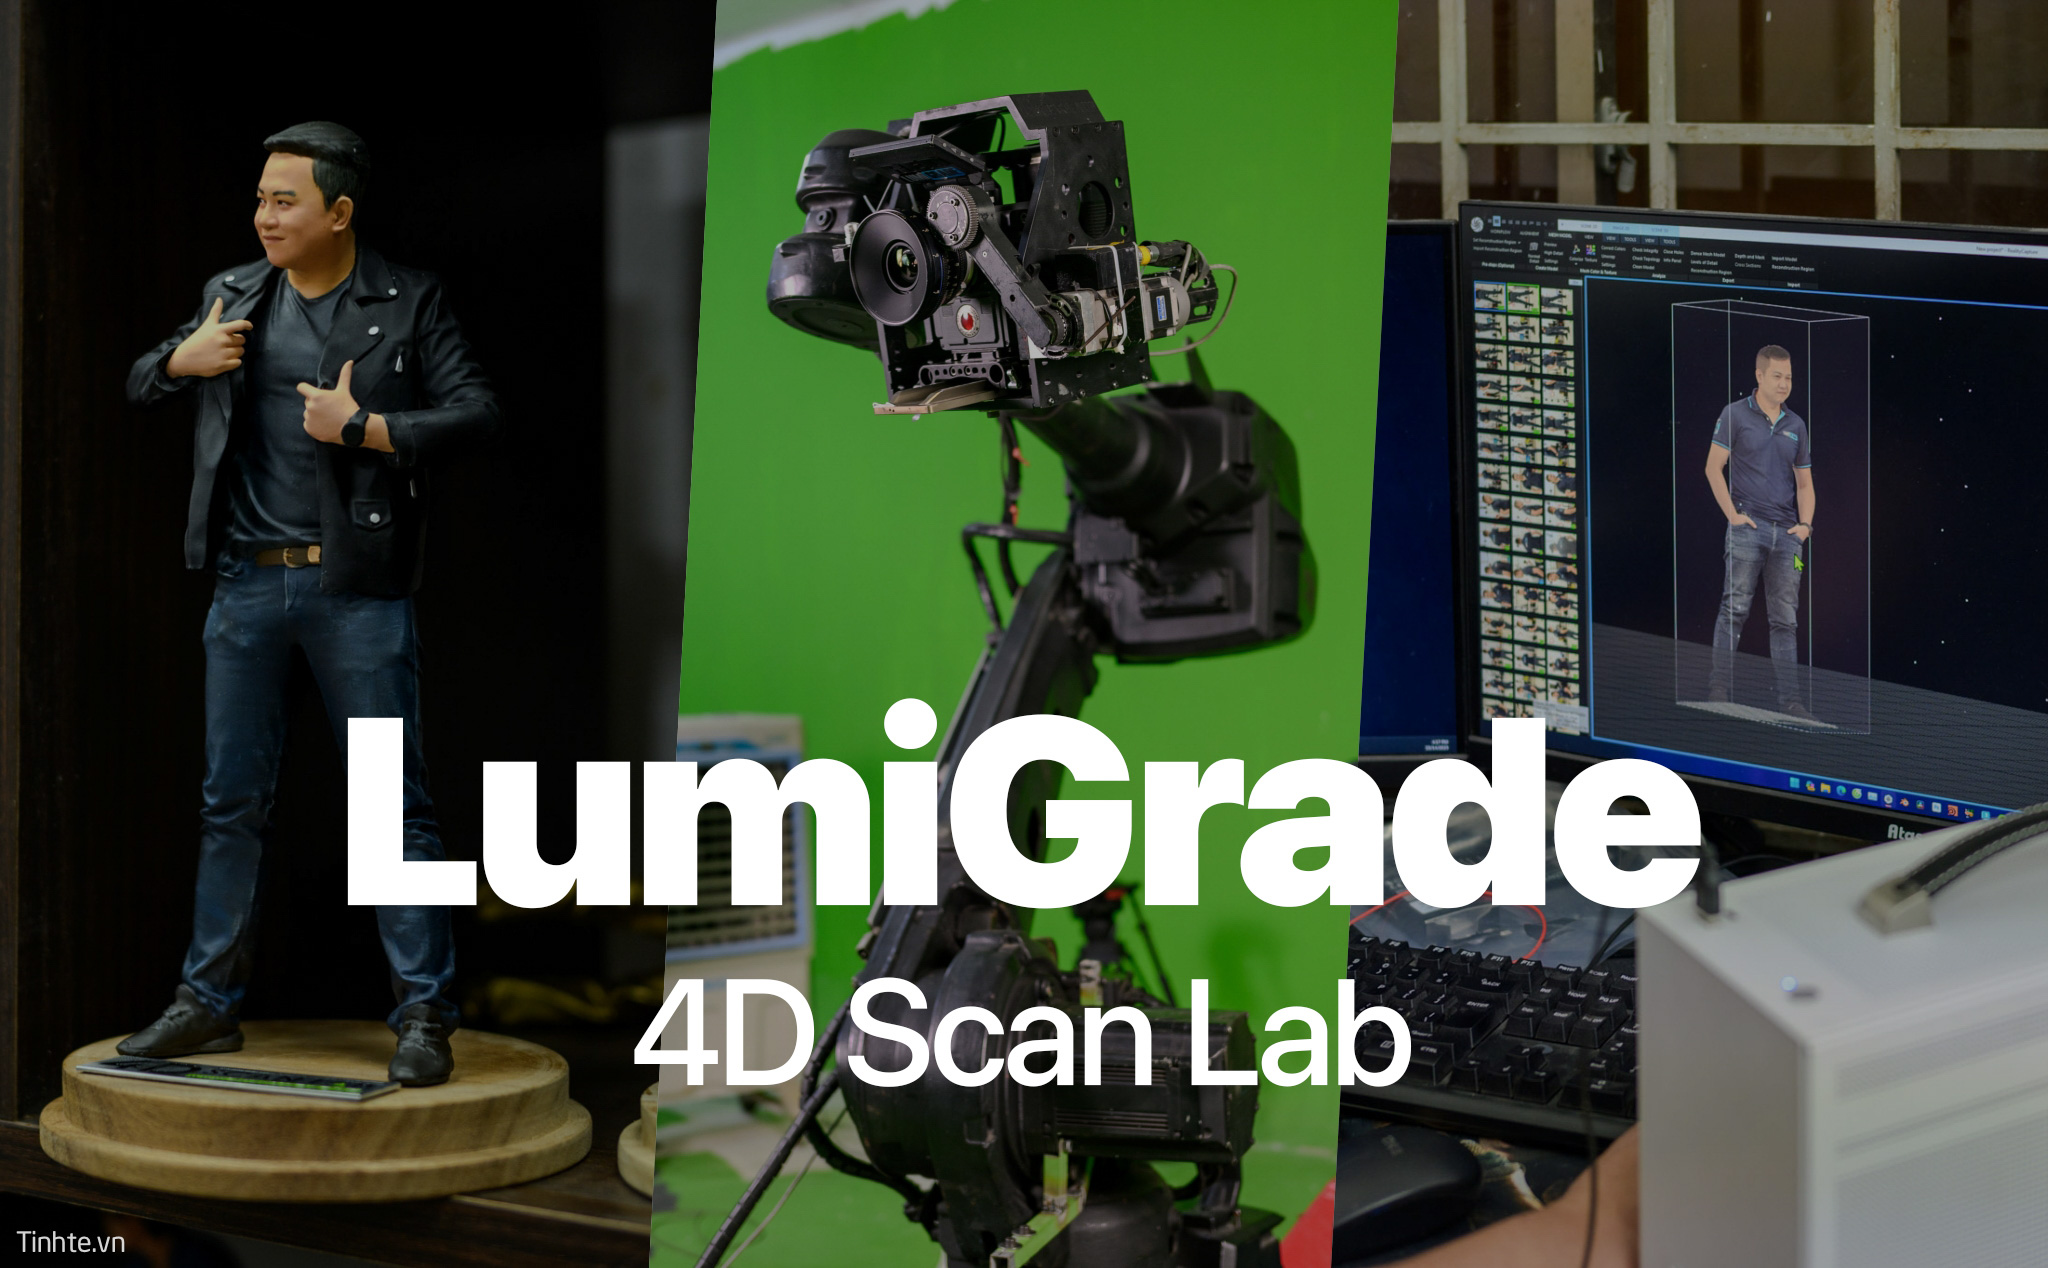 Tham quan Lumigrade với 4D Scan Lab số hoá nhân vật, robot quay phim với công nghệ Hollywood